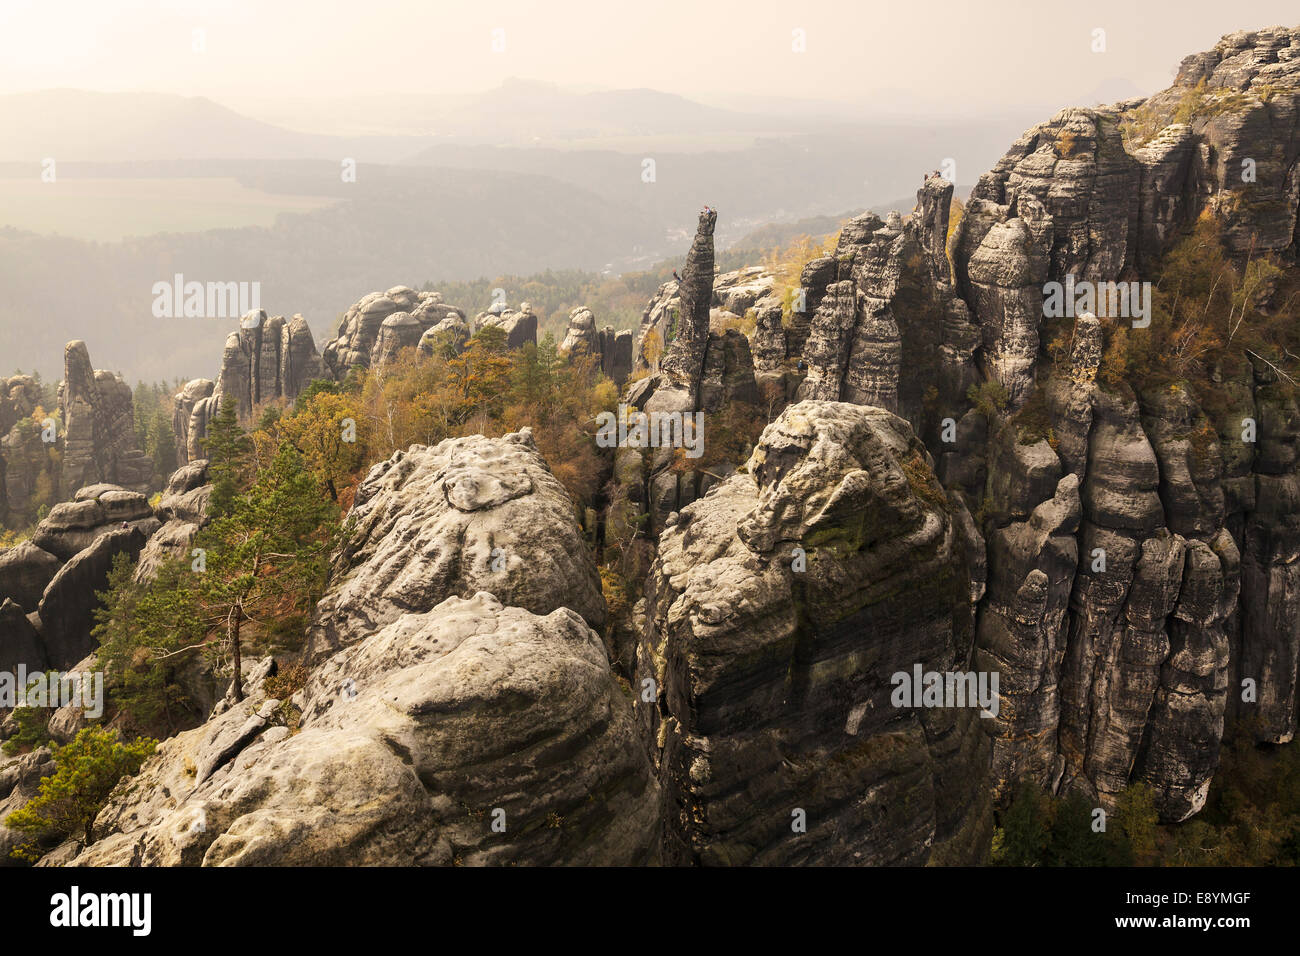 view of the Schrammstein rocks in the Elbe Sandstone mountains, Sachsische Schweiz, Saxony, Germany Stock Photo